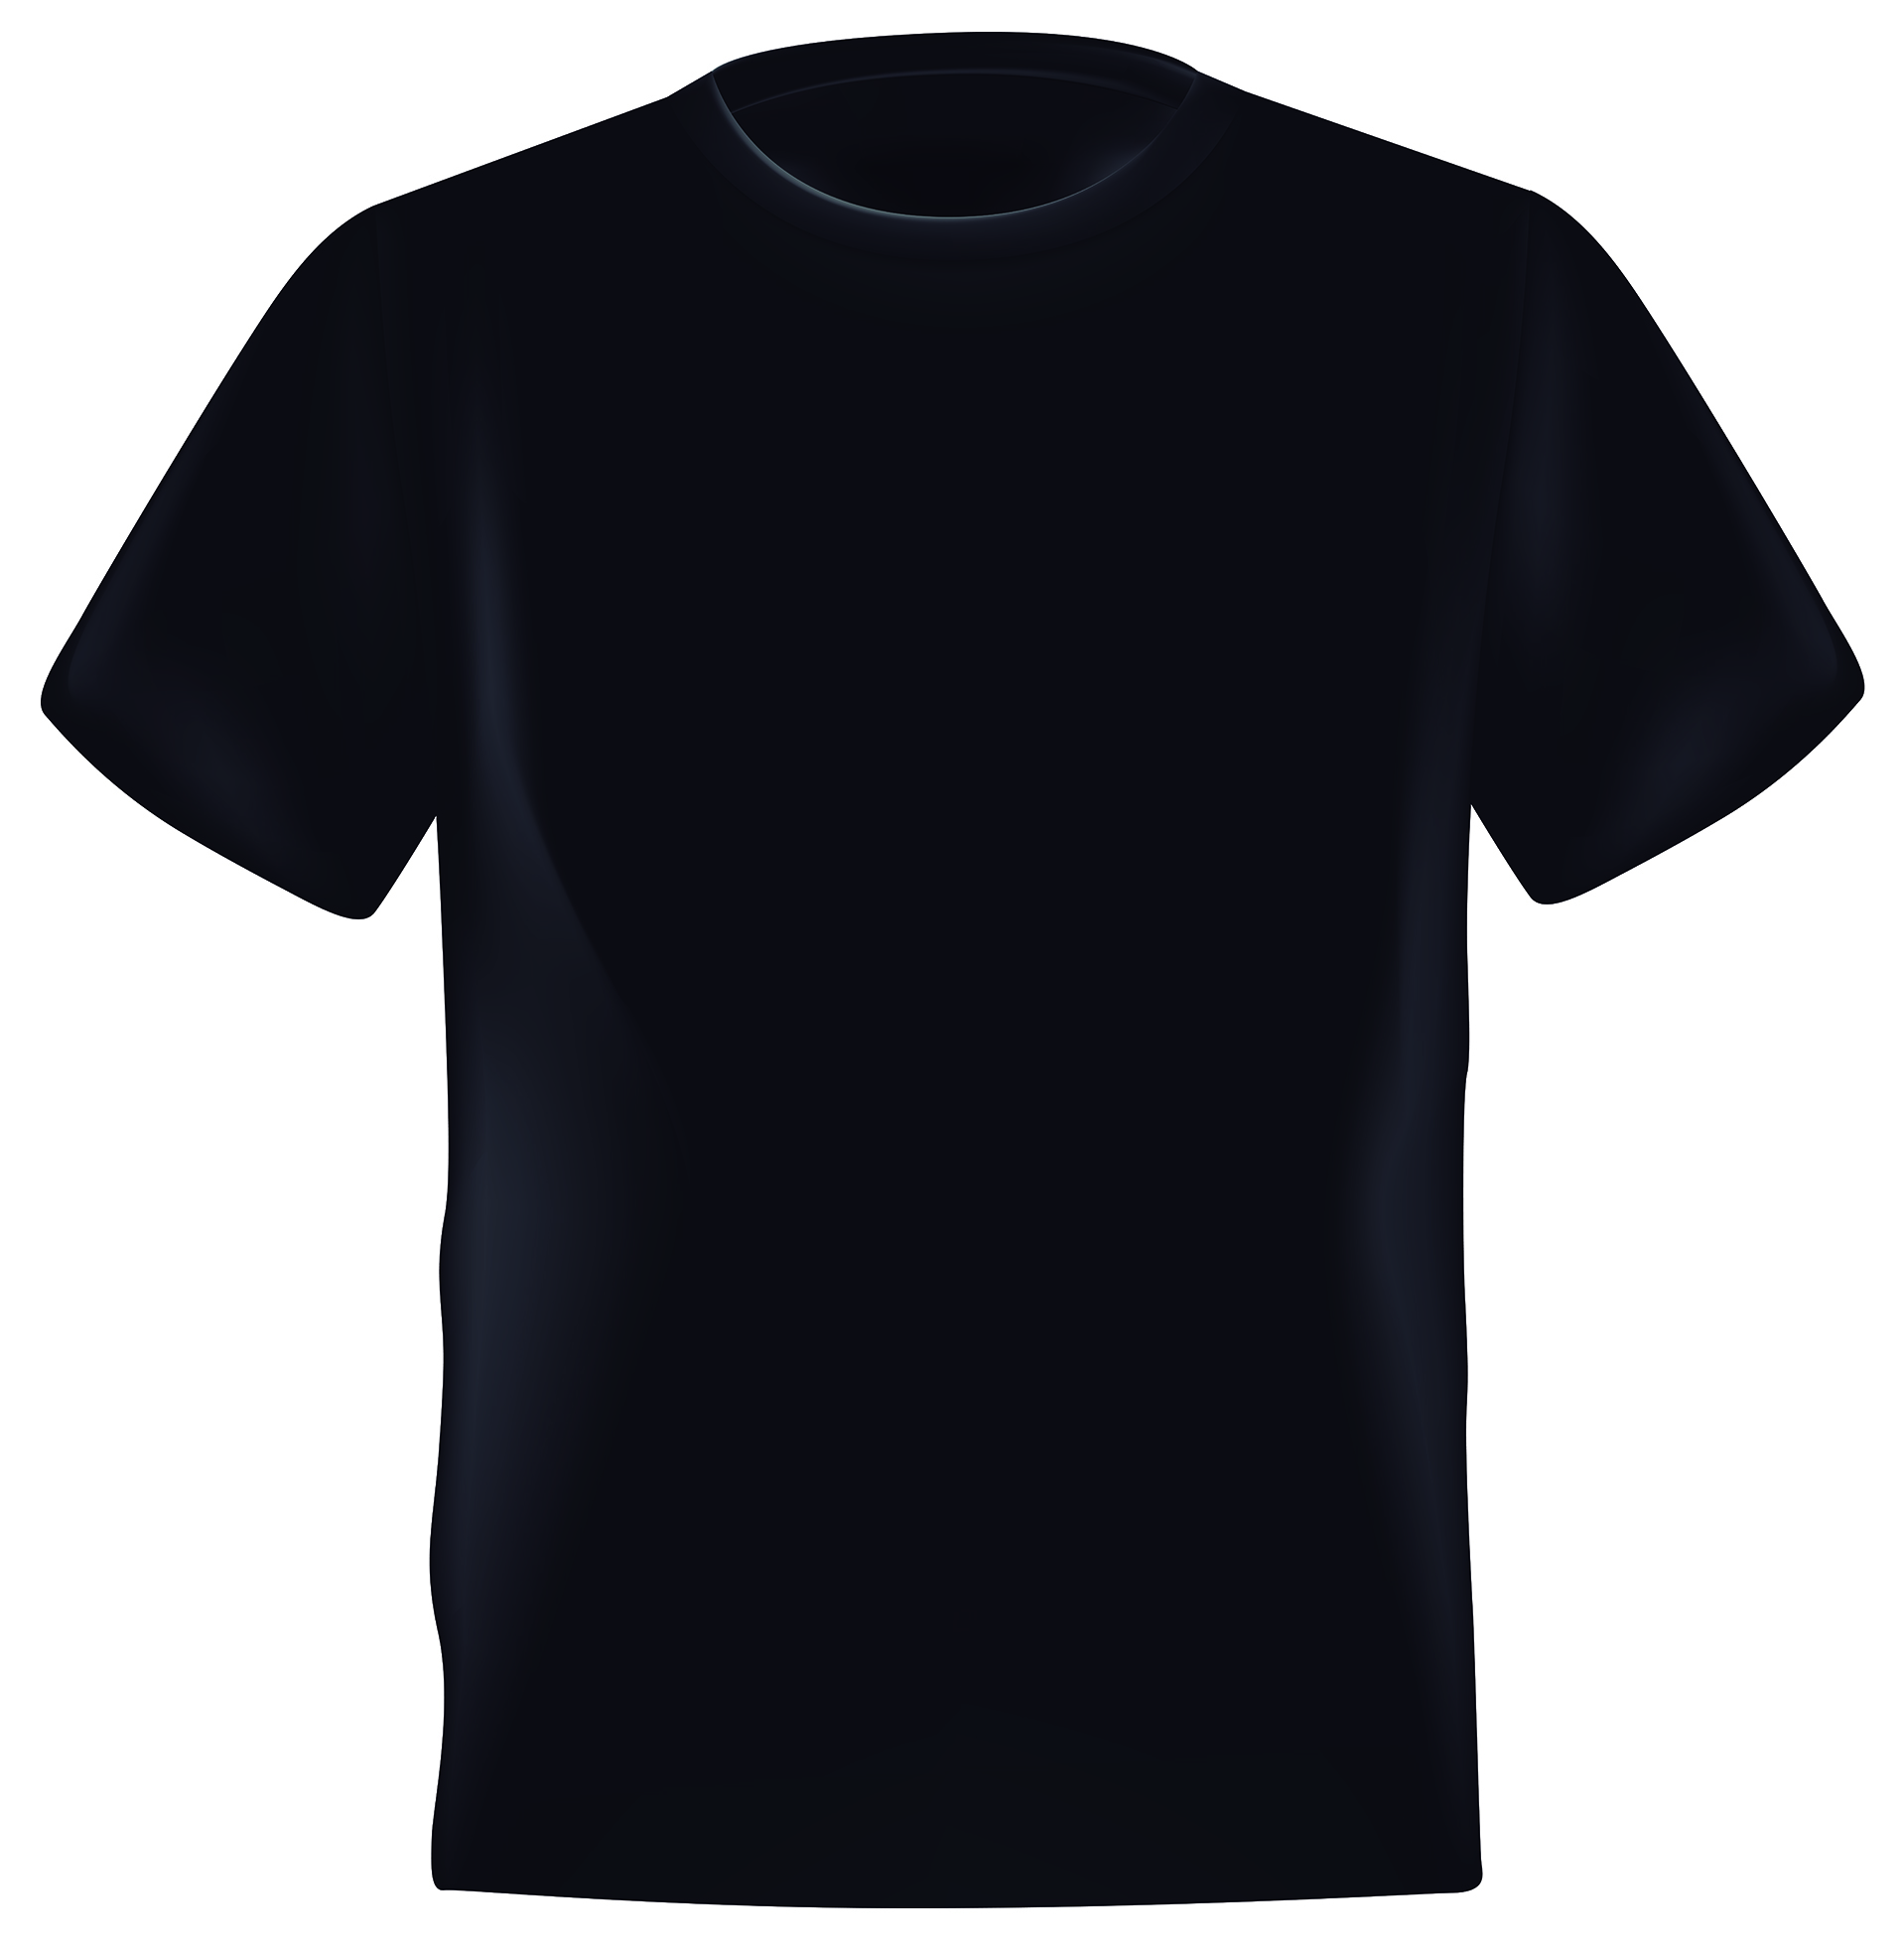 Camisetas negras personalizadas